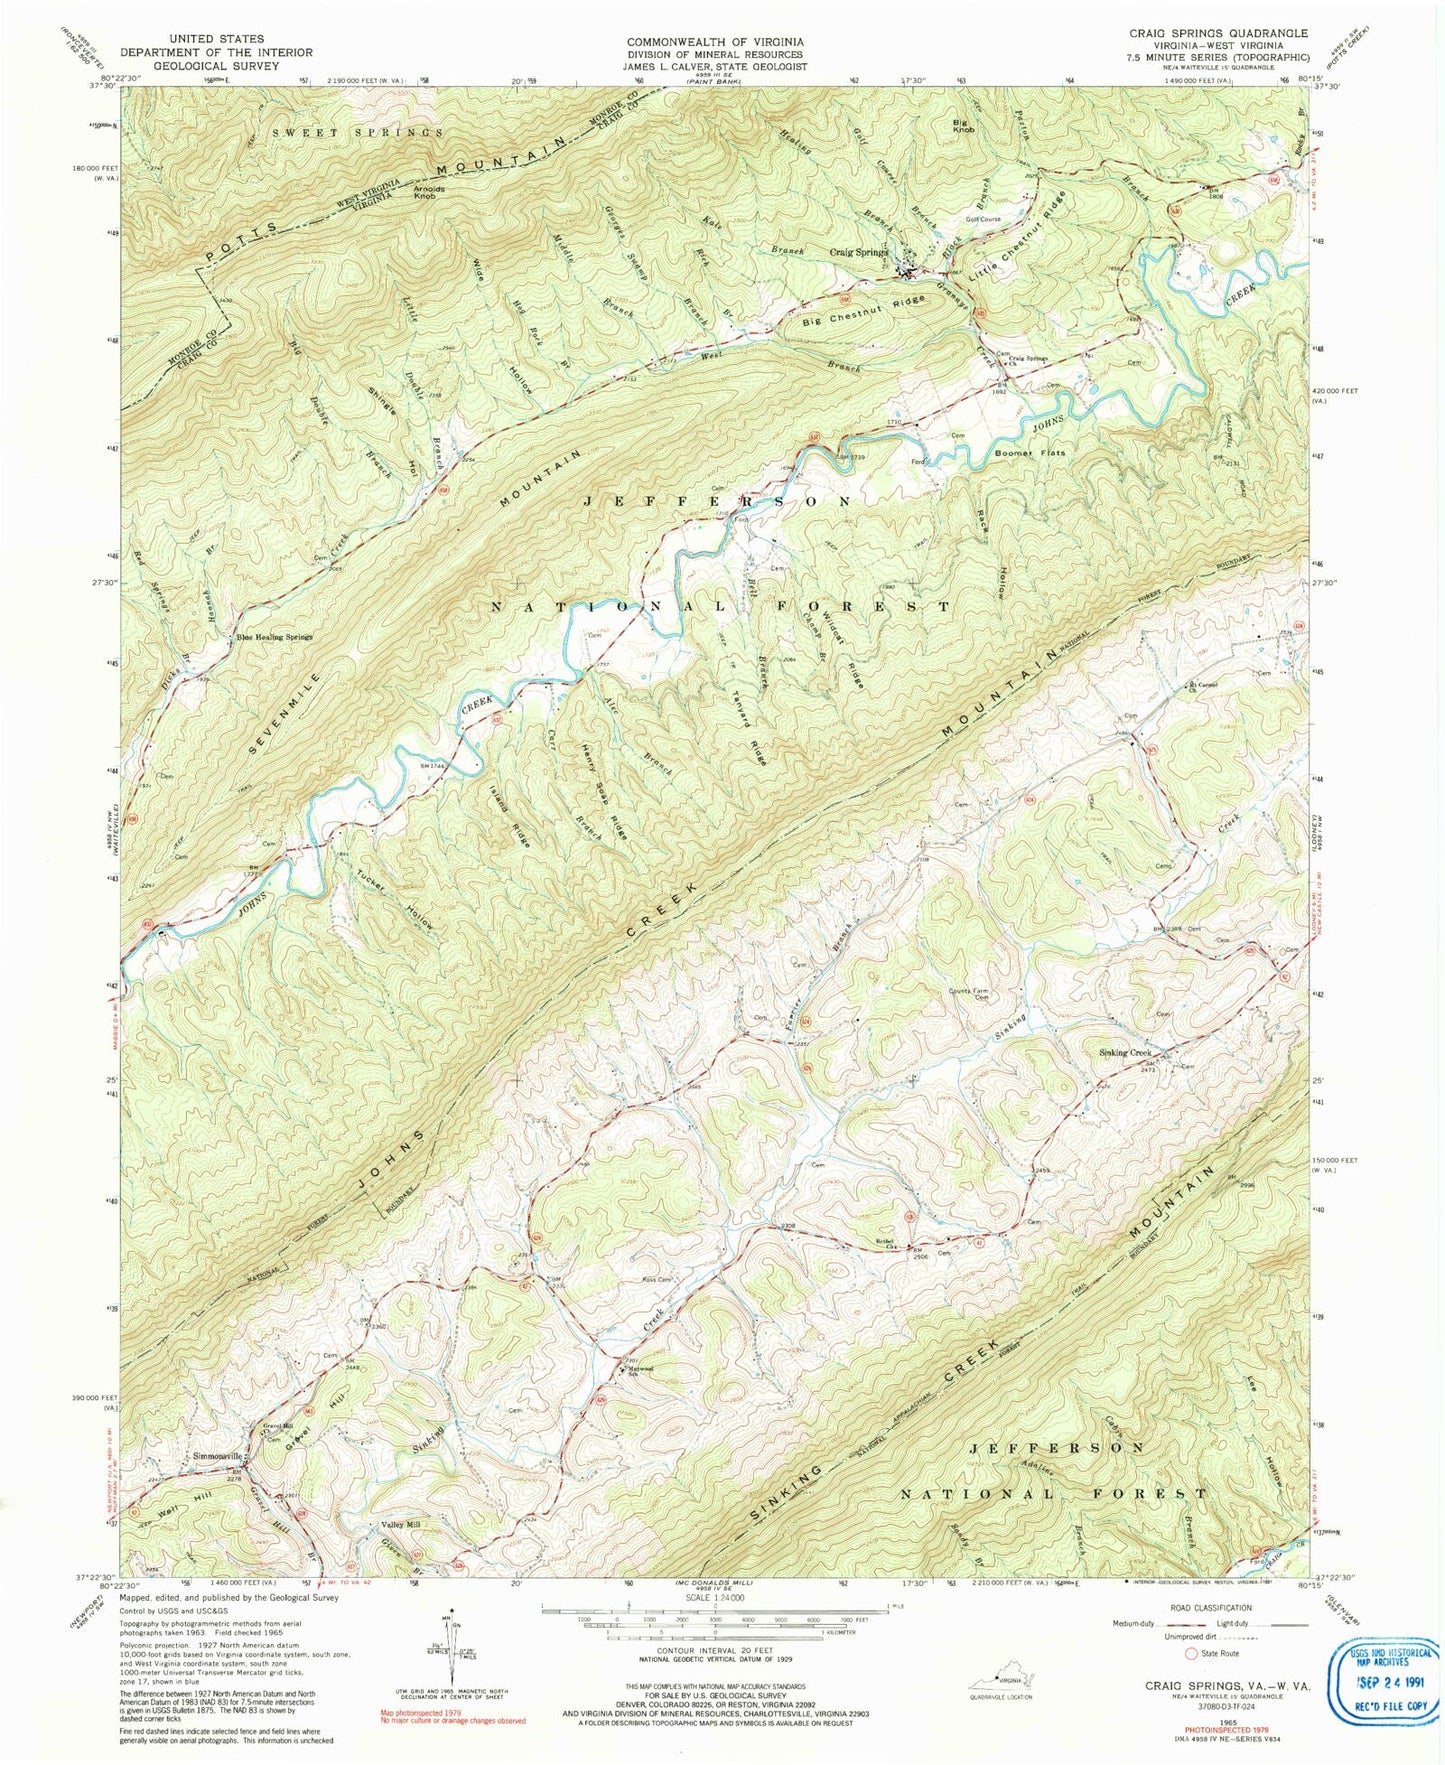 Classic USGS Craig Springs Virginia 7.5'x7.5' Topo Map Image